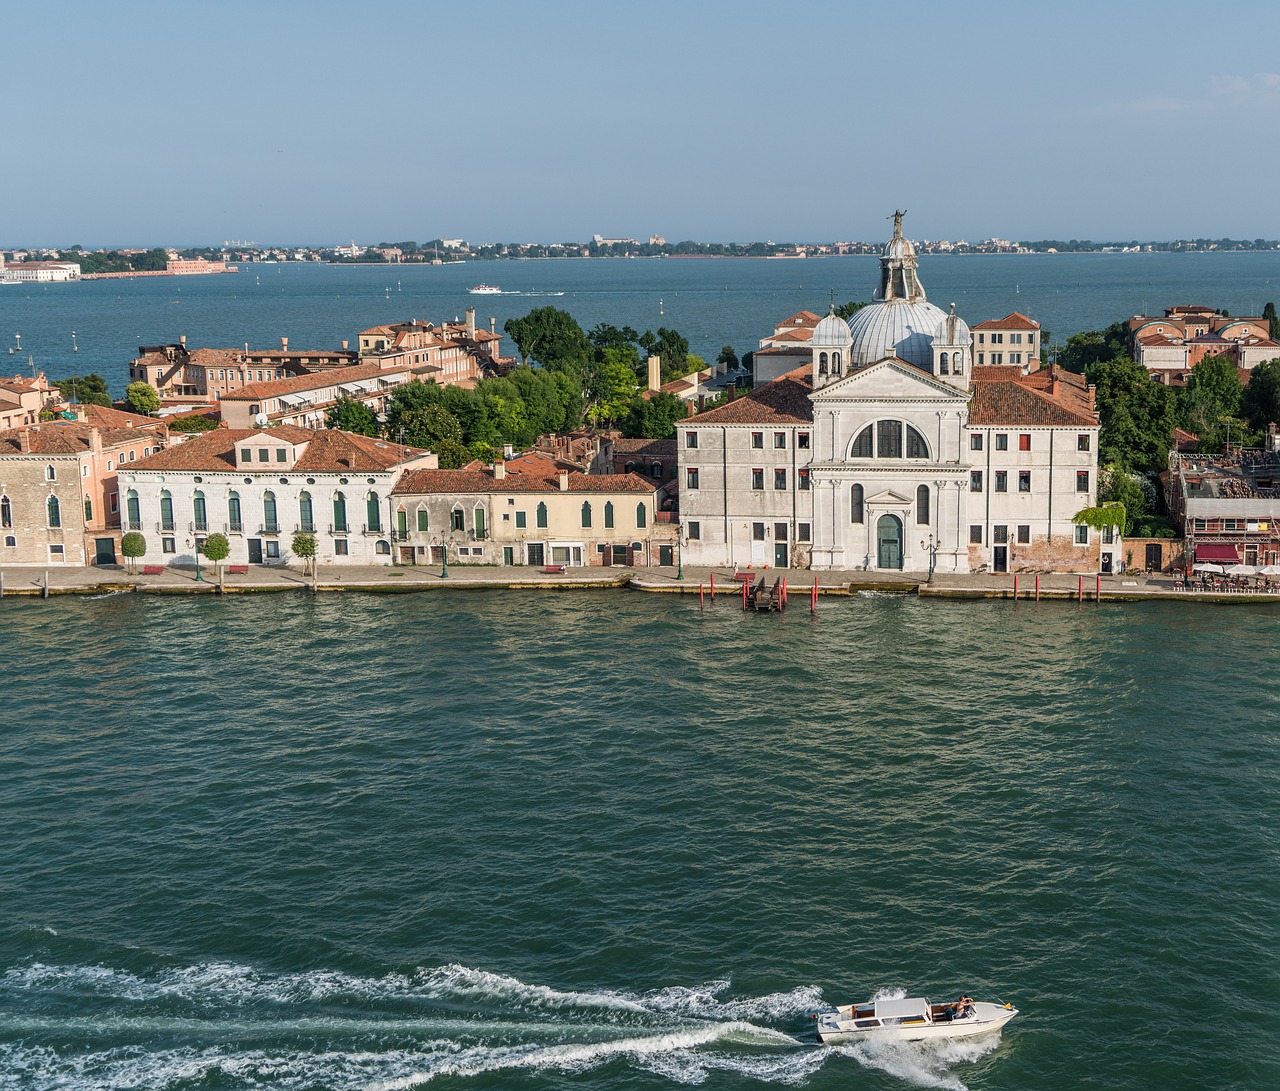 Venecija, Italy, Europa, Kelionė, Valtis, Kanalas, Vanduo, Architektūra, Istorija, Turizmas